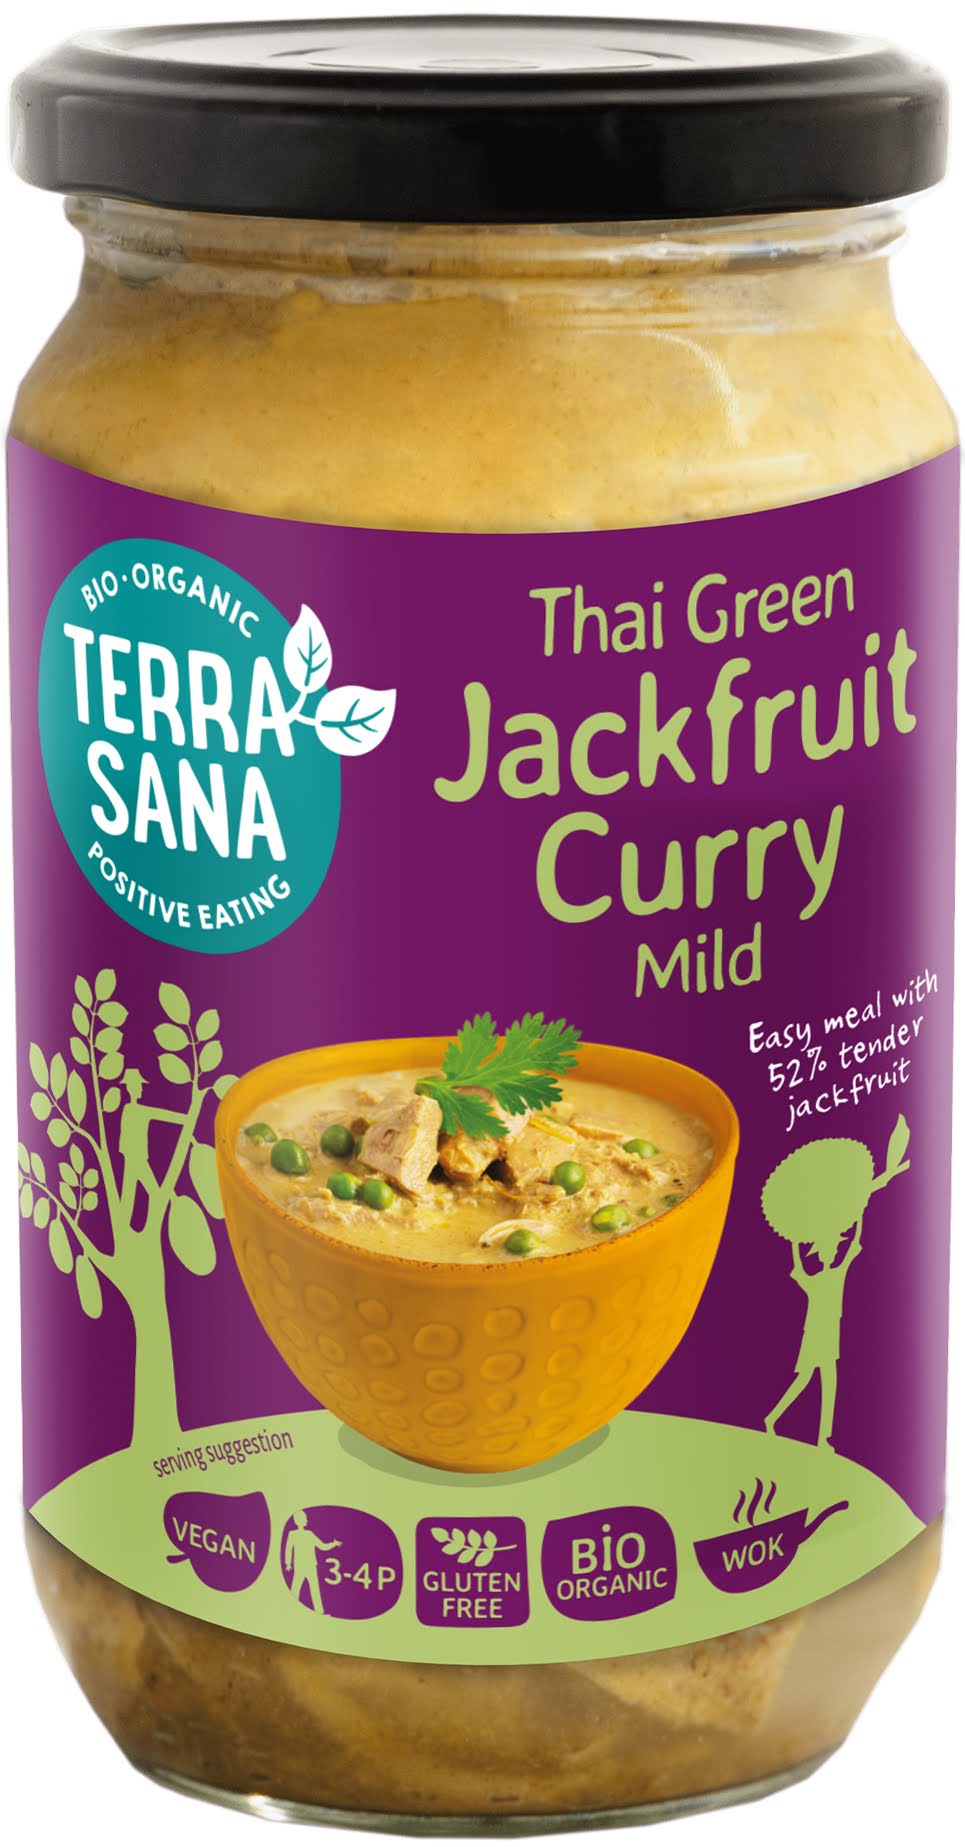 Grünes Thai-Curry mit Jackfrucht